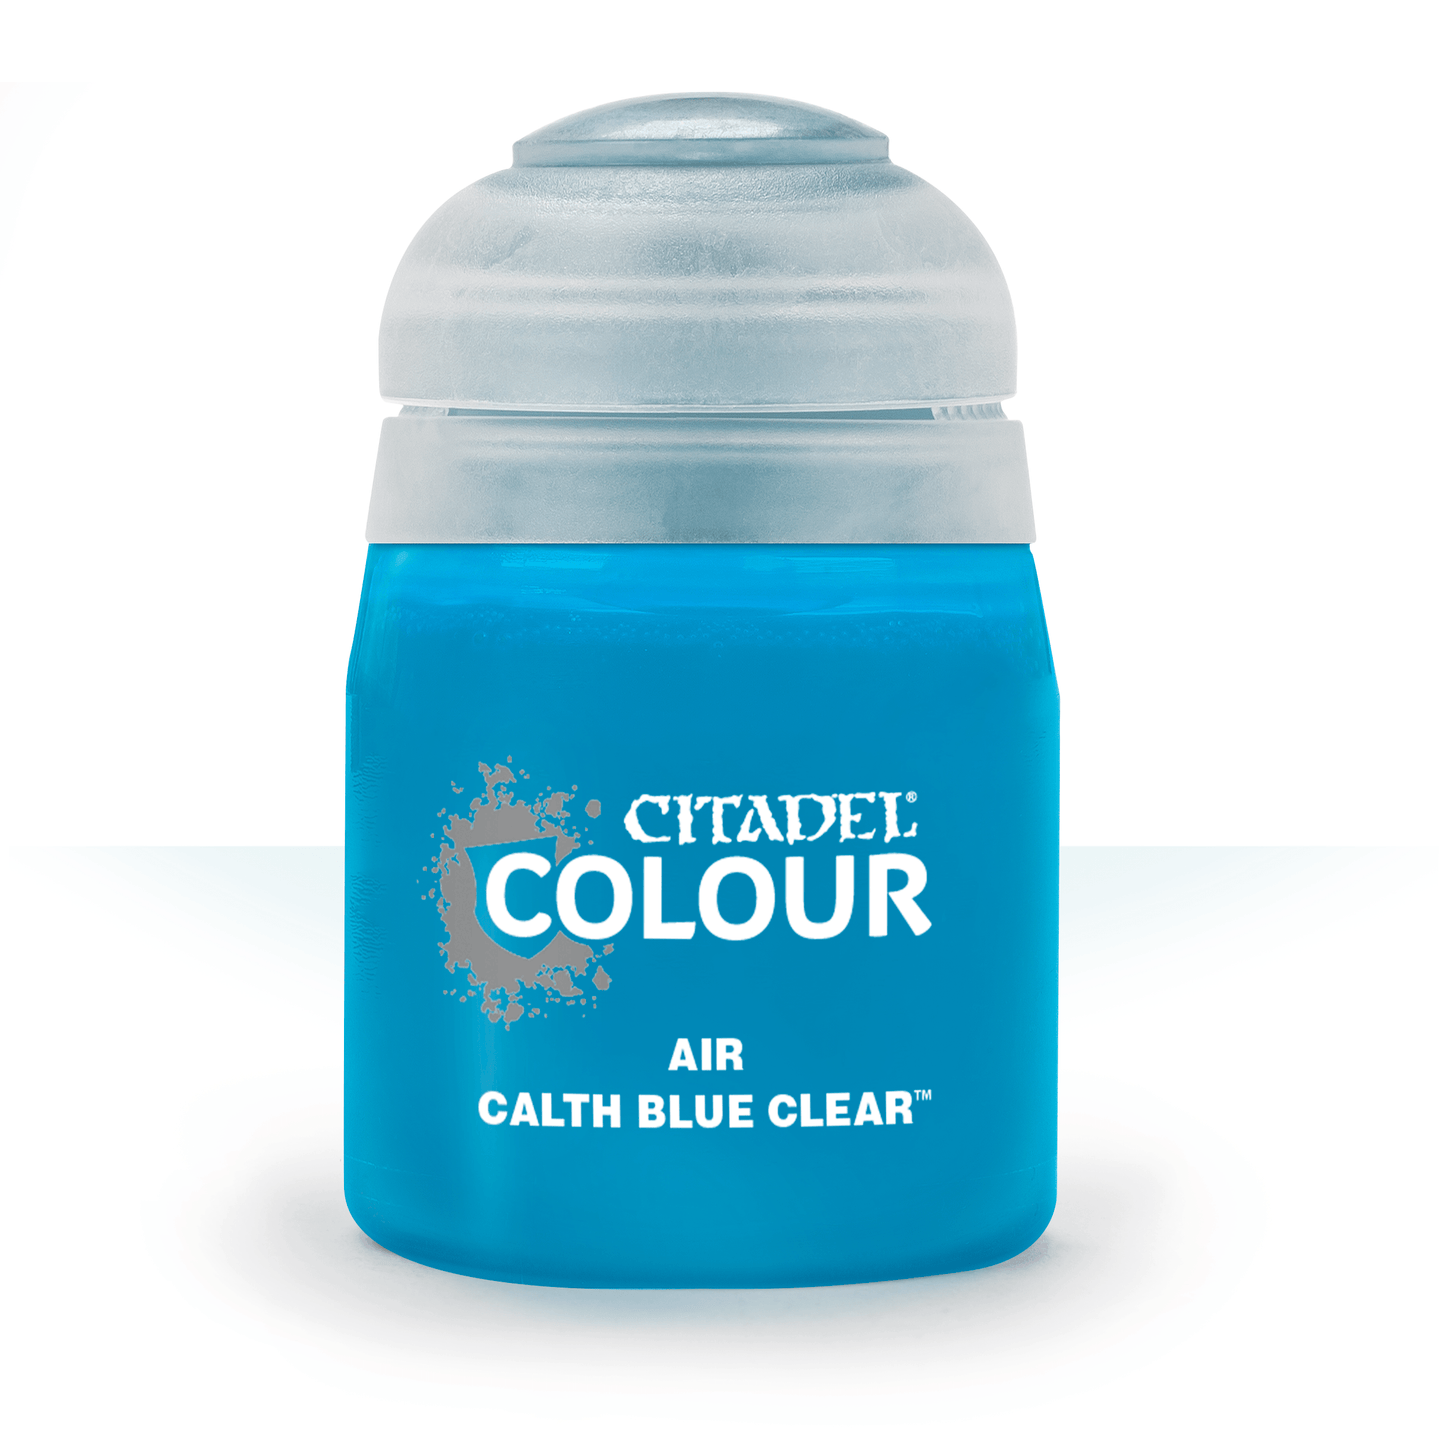 Air Calth Blue Clear